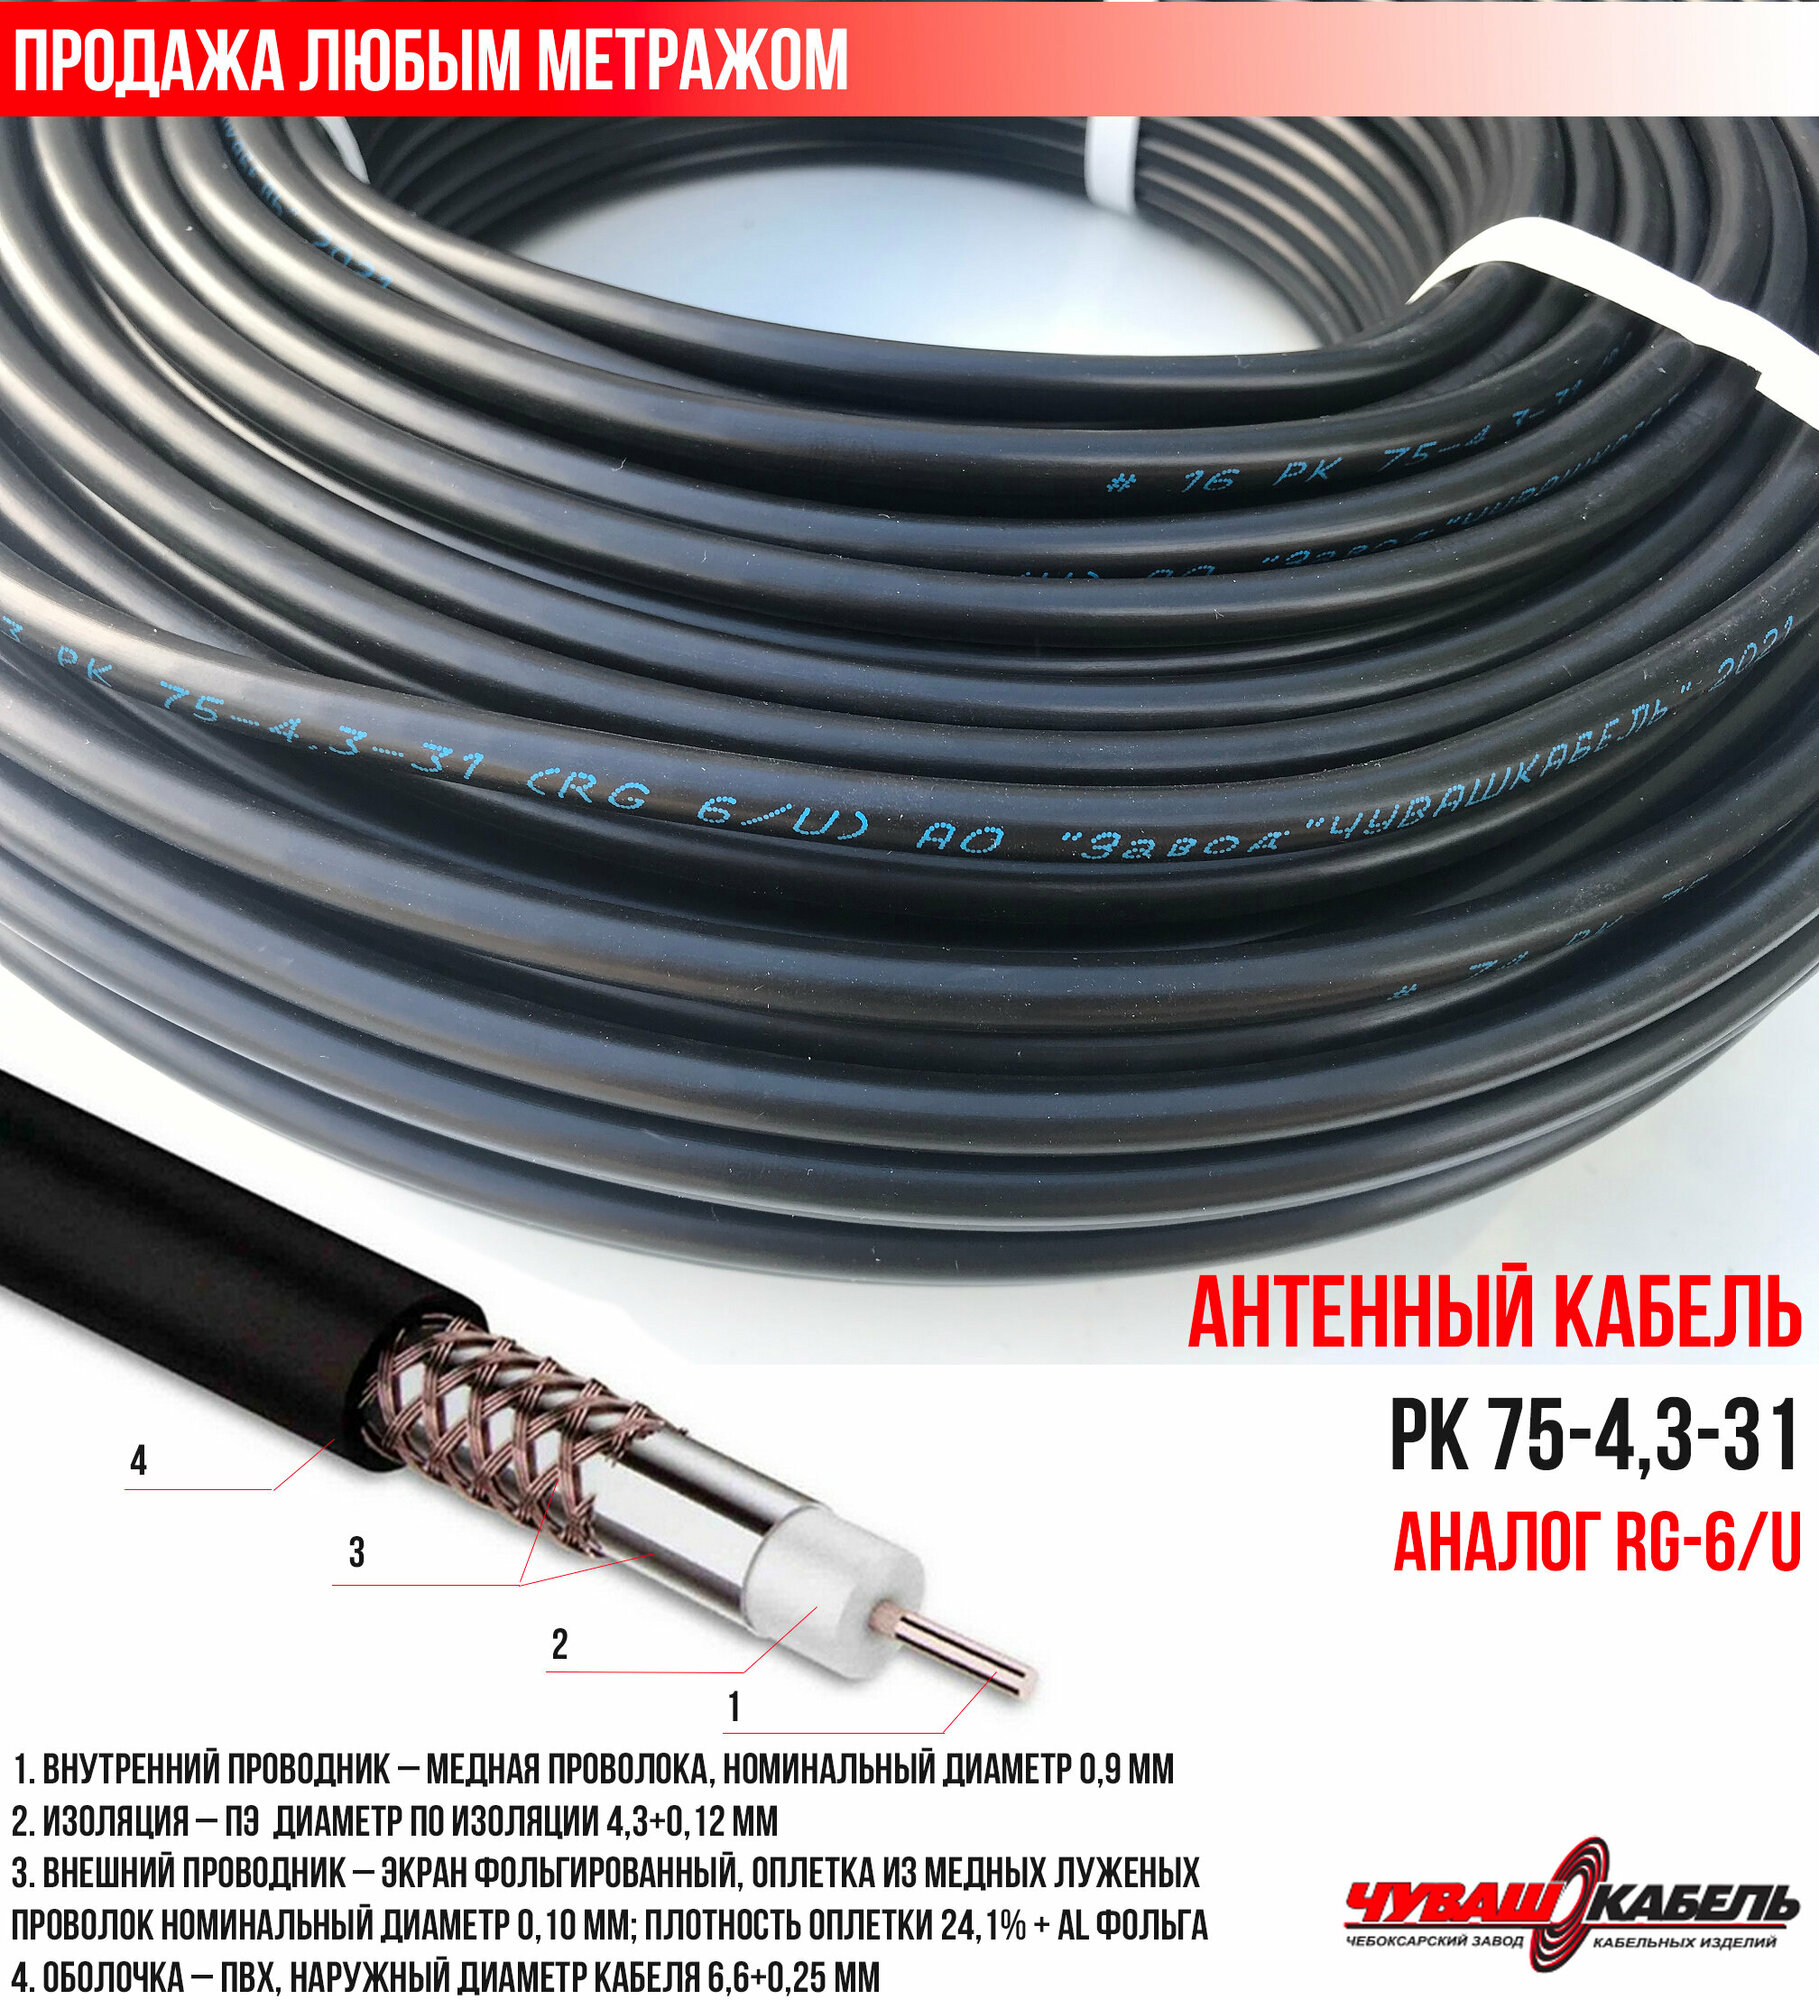 Телевизионный кабель (антенный 75Ом) РК 75-43-31 ЧувашКабель для уличной прокладки (продажа метражом)